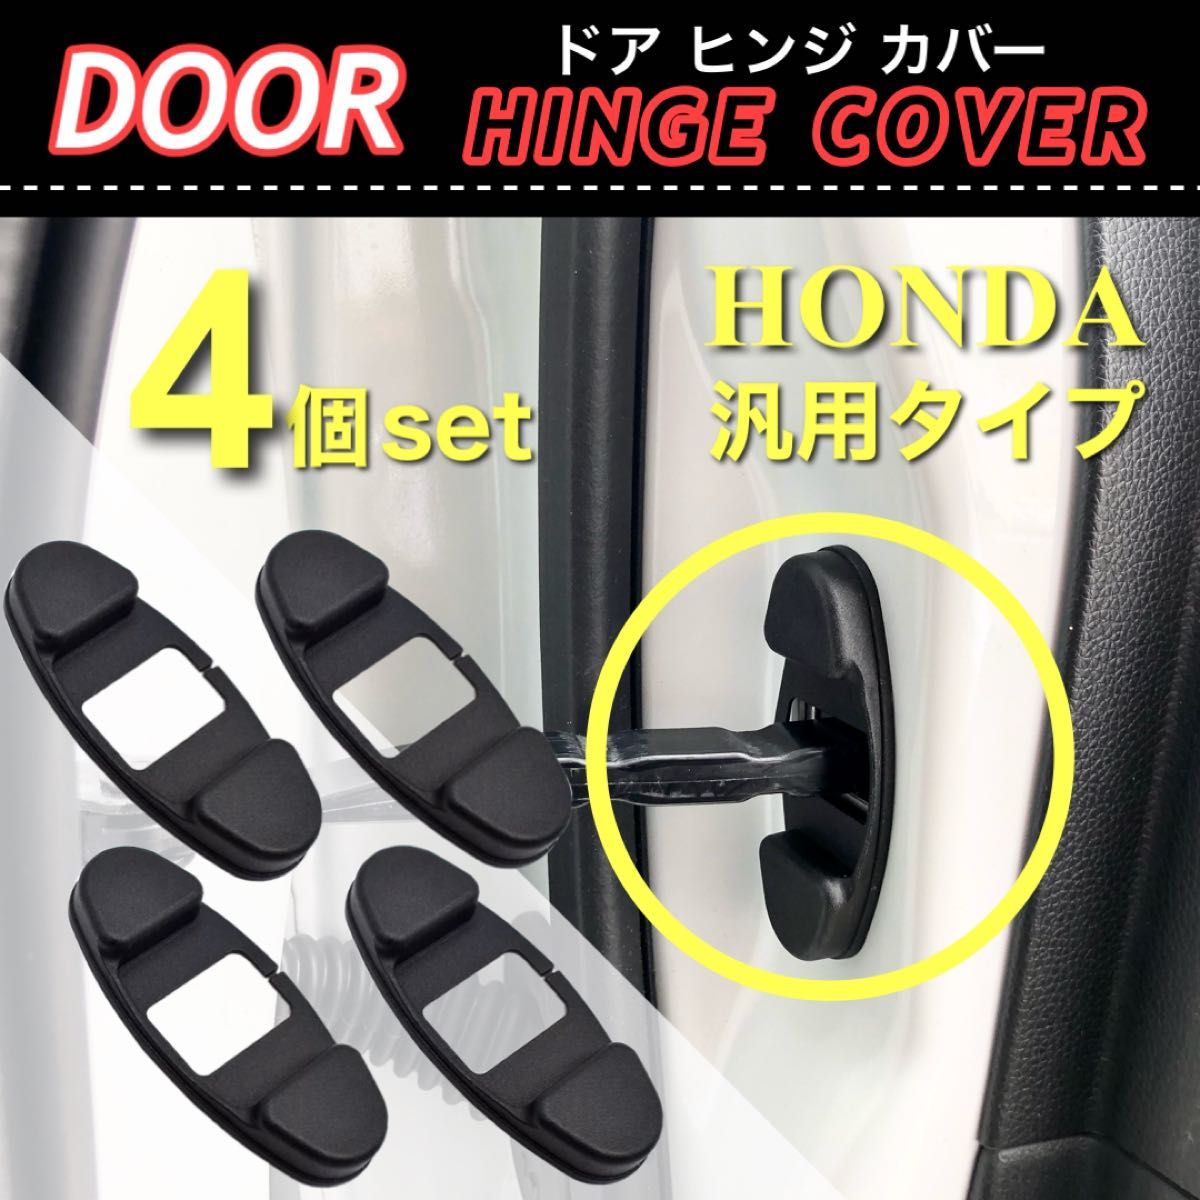 ホンダ用 ドア ストッパー カバー ドア側 ヒンジカバー 4個入 保護カバー /フィット/オデッセイ/N-BOX/ステップワゴン